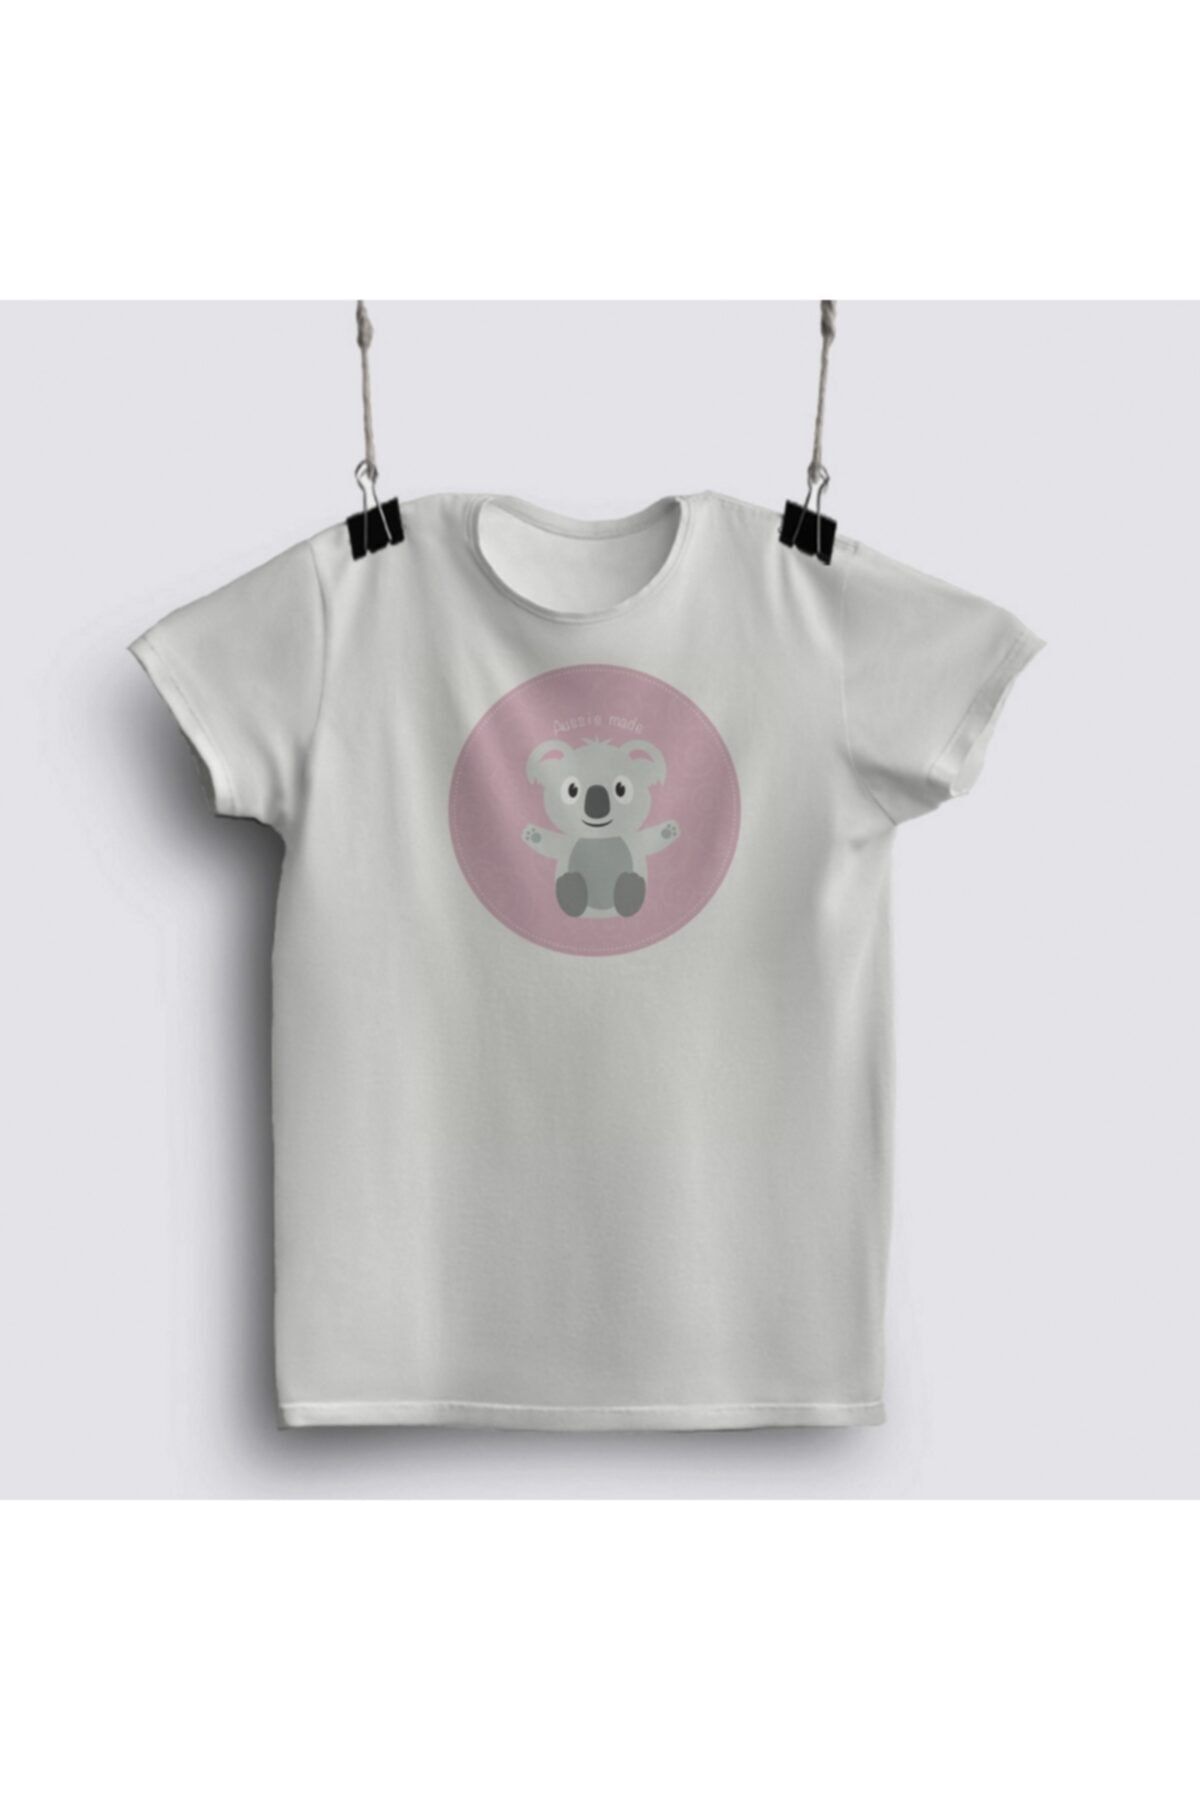 Fizello Cute Aussie Kids Design Pink Koala T-shirt